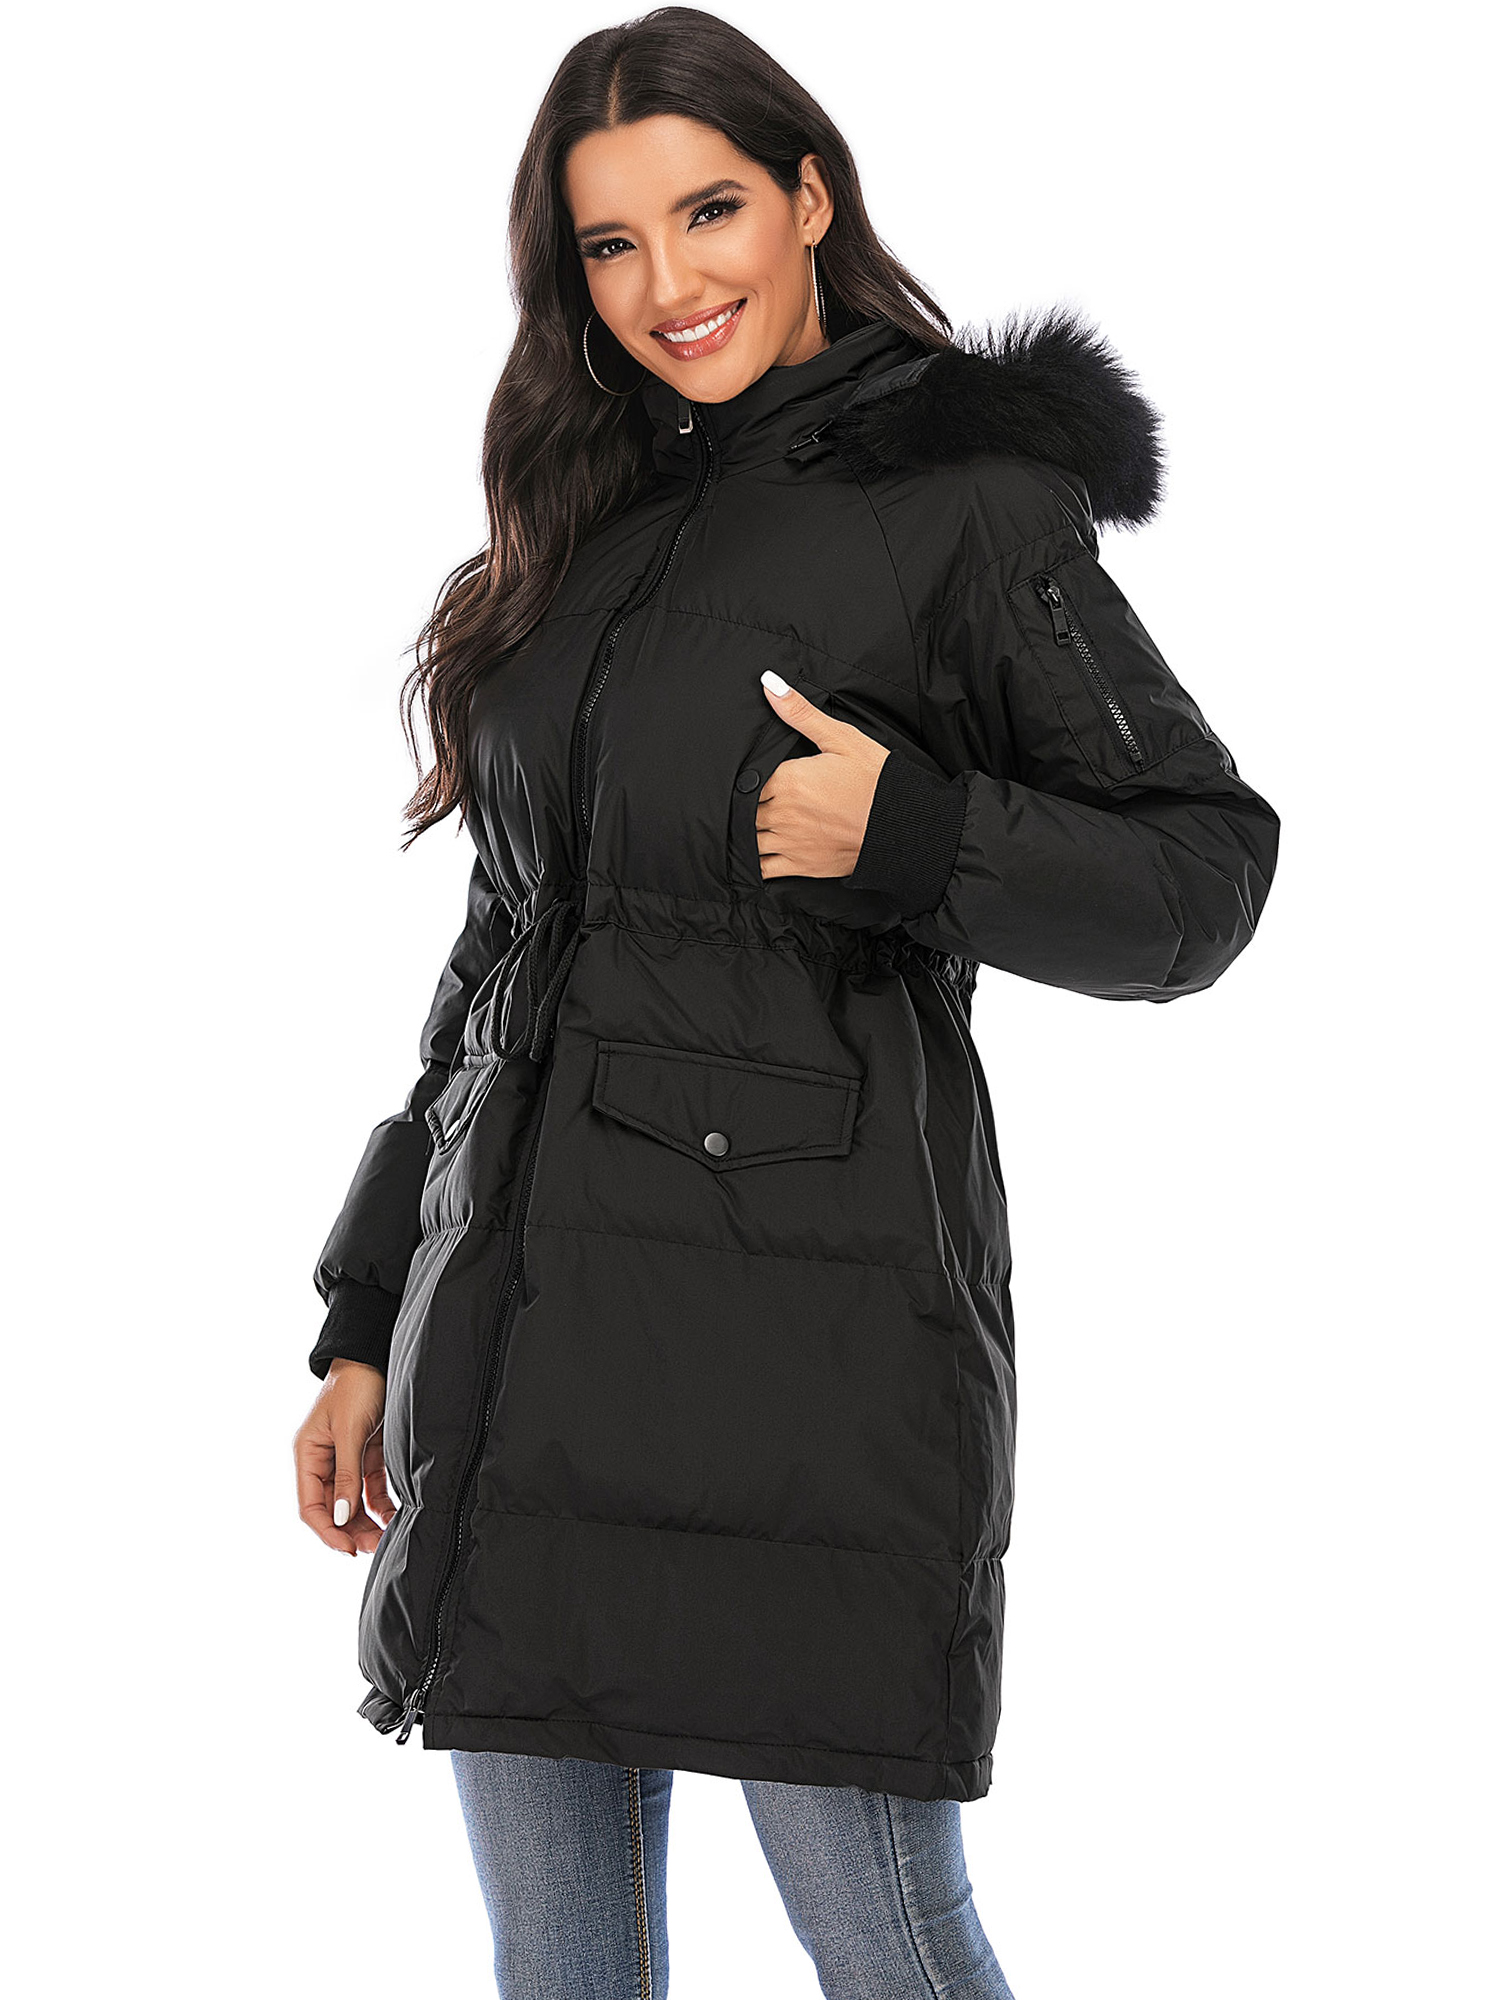 LELINTA Women Winter Plus Size Long Hoodie Coat Warm Hooded Jacket Zip Parka Overcoats Raincoat Active Outdoor Trench Coat - image 3 of 7